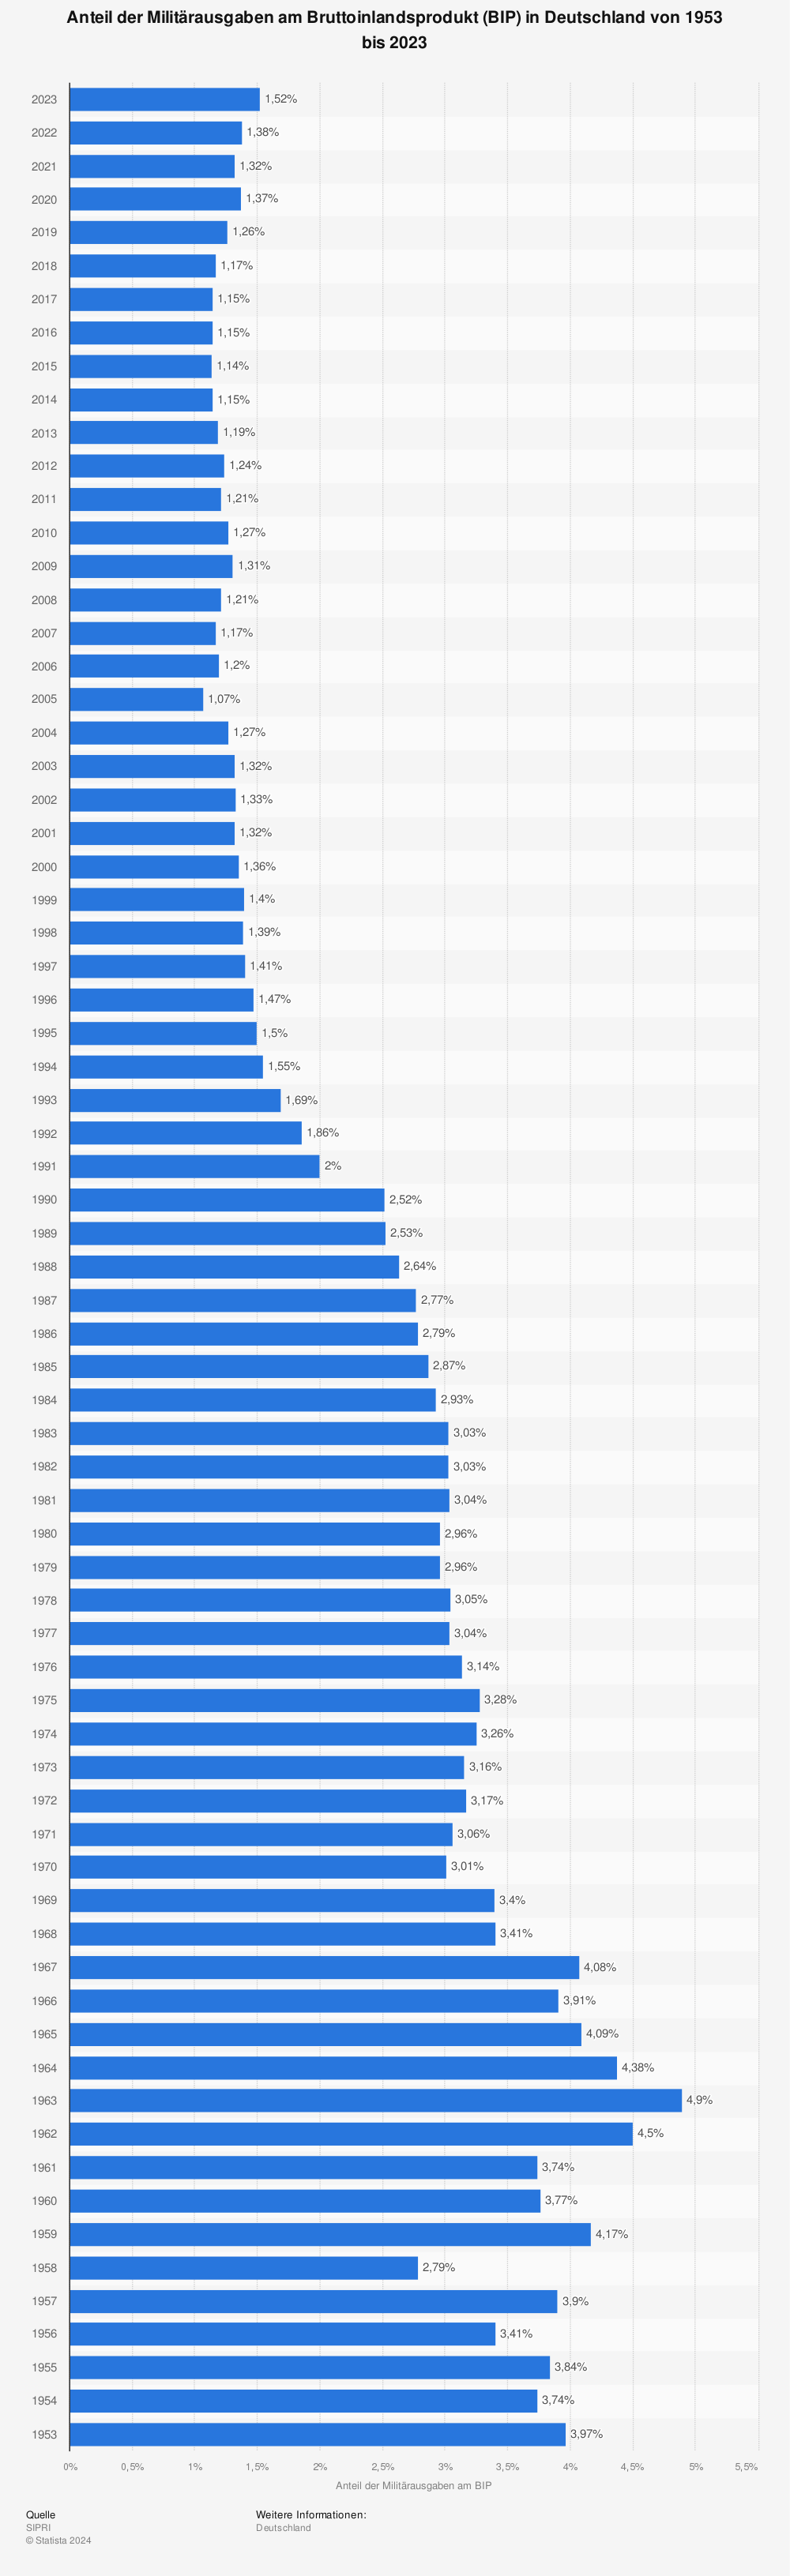 Statistik: Anteil der Militärausgaben am Bruttoinlandsprodukt (BIP) in Deutschland von 1995 bis 2020 (in Prozent) | Statista